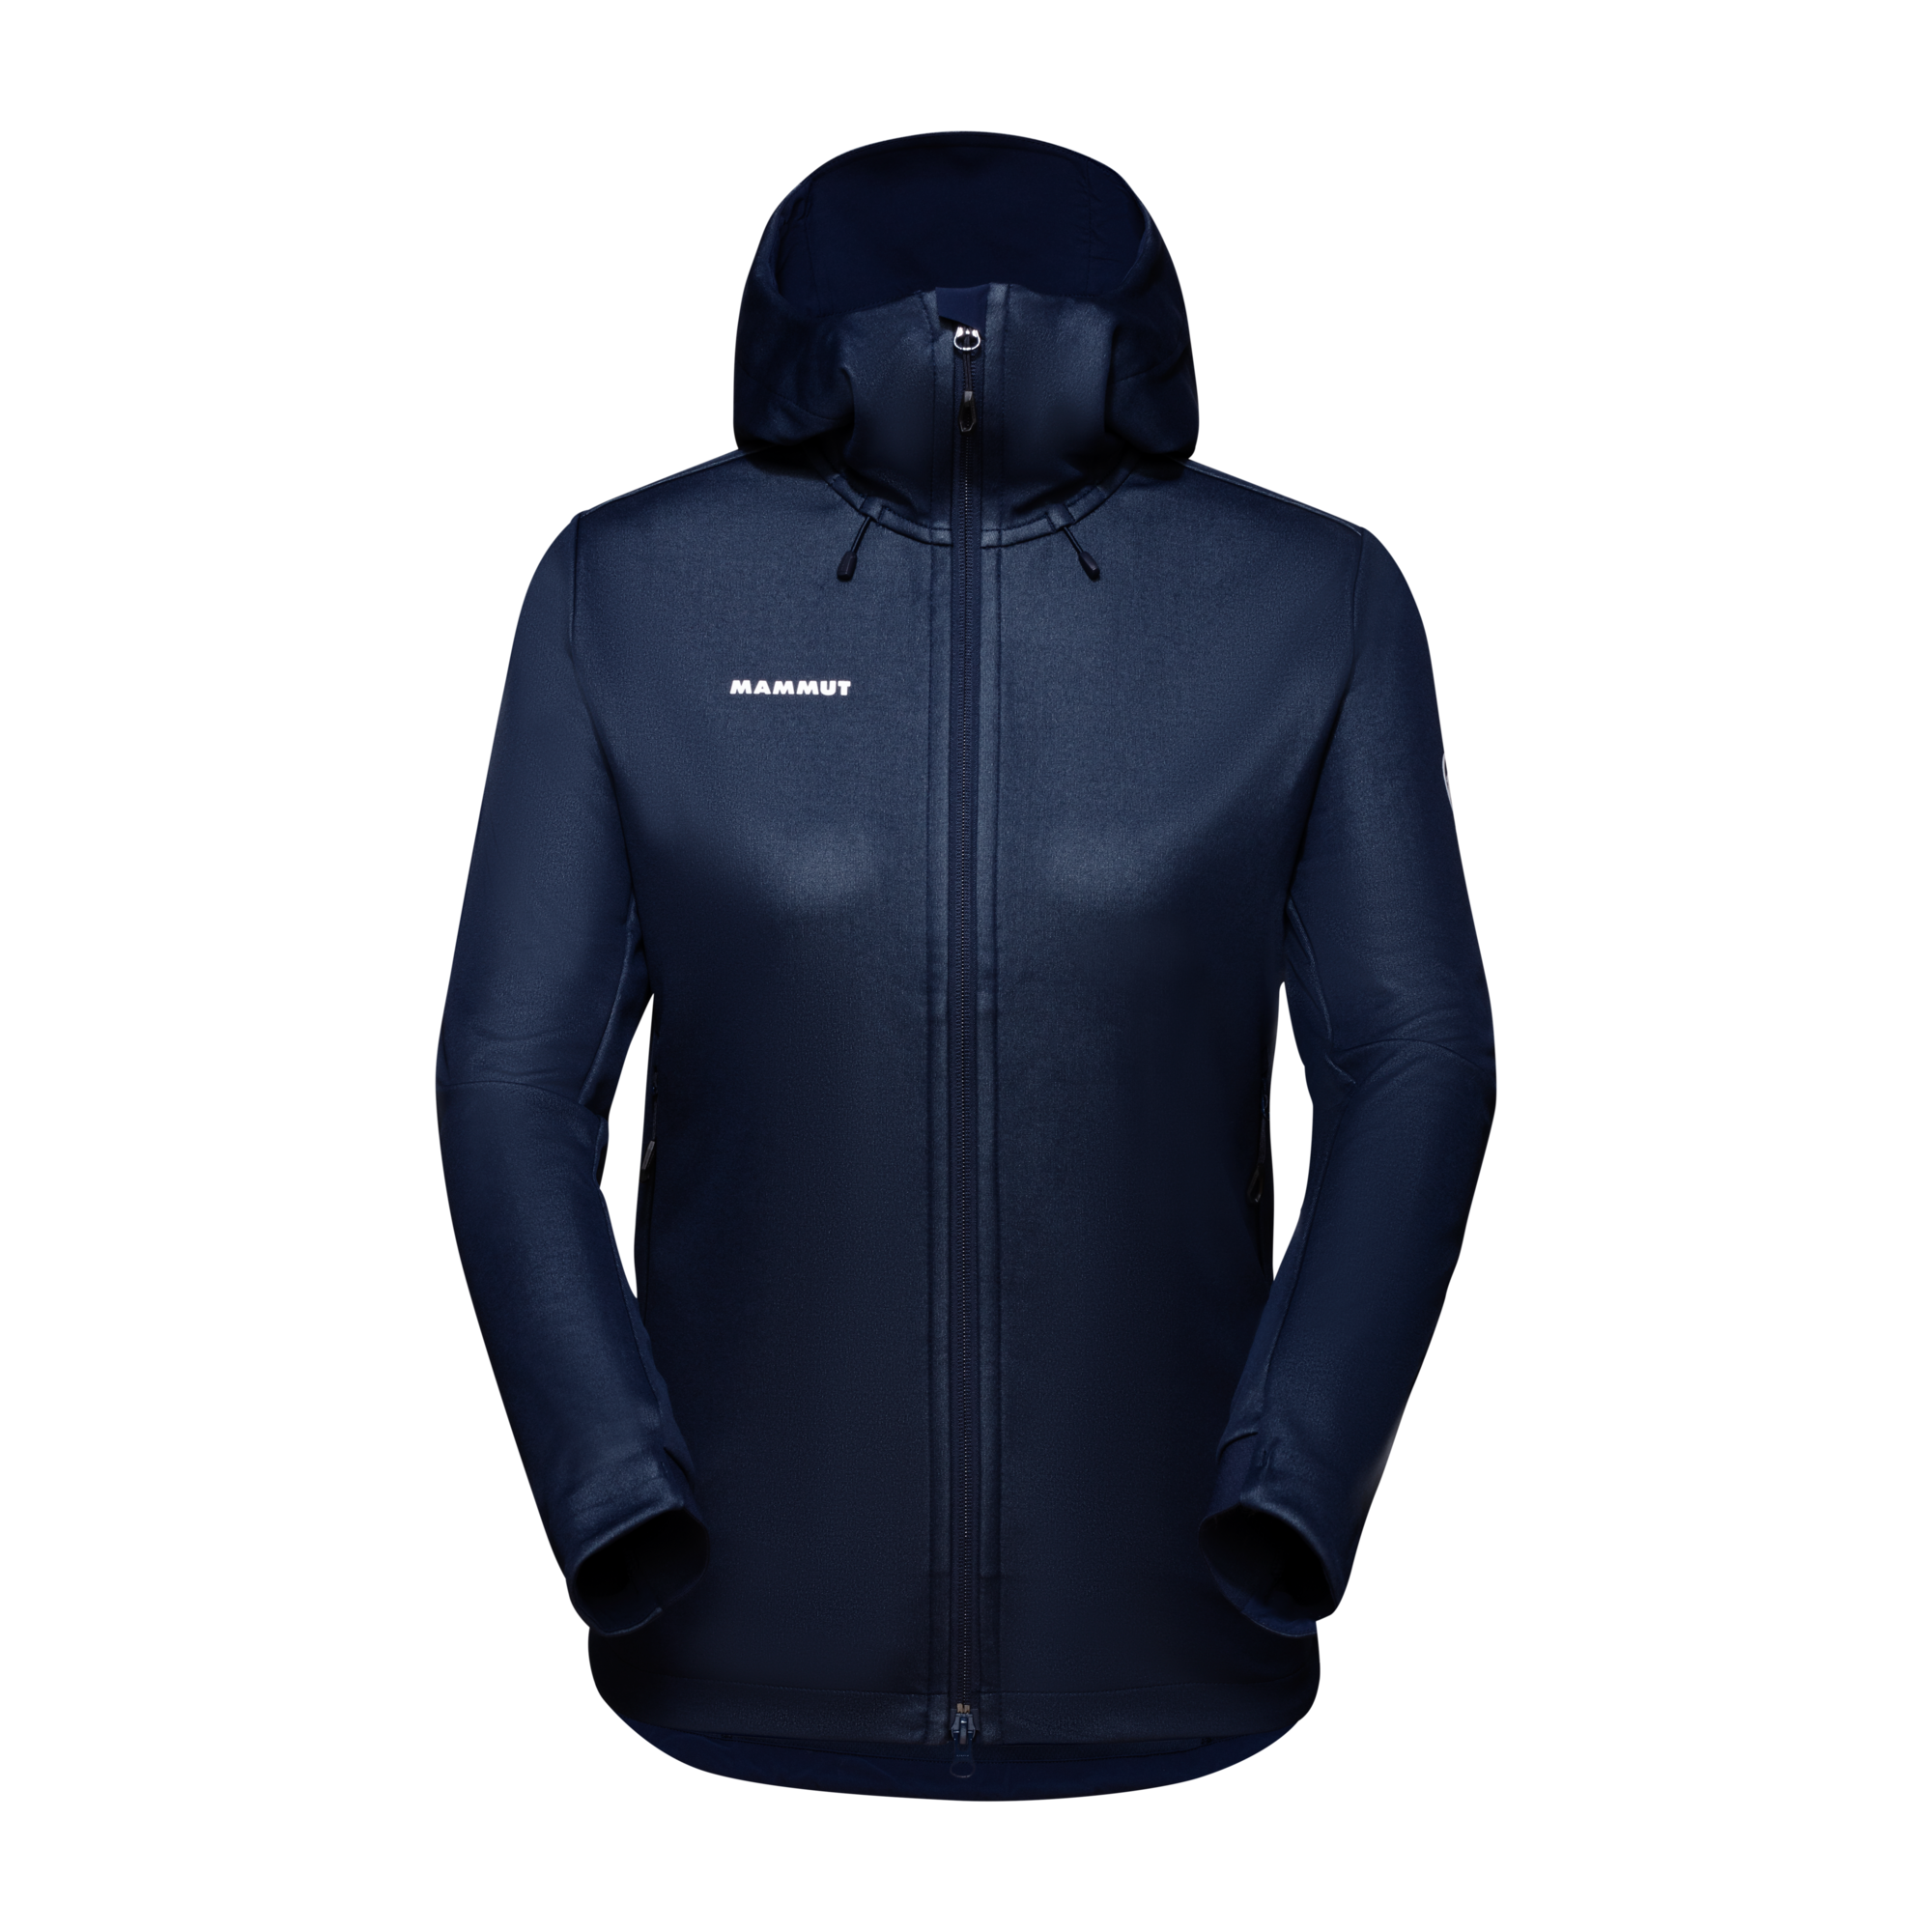 Waterproof Jackets | Mammut Online Shop